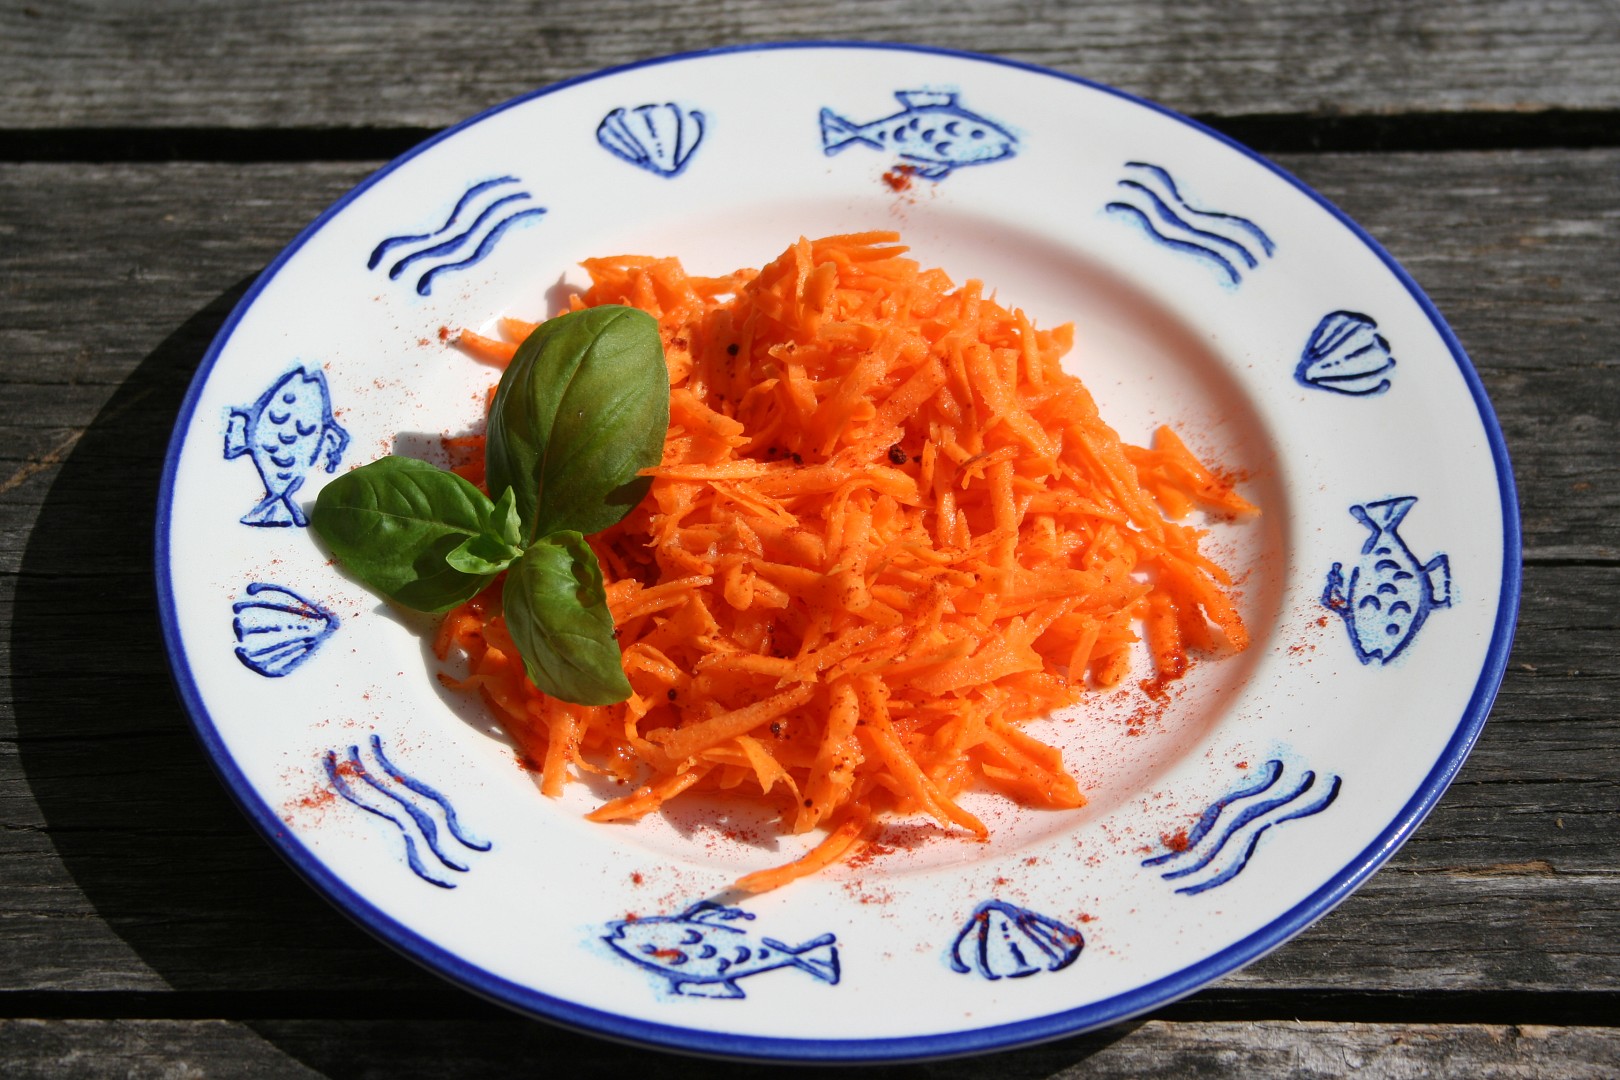 Nezvyklý mrkvový salát - chuti se nebojte:-)